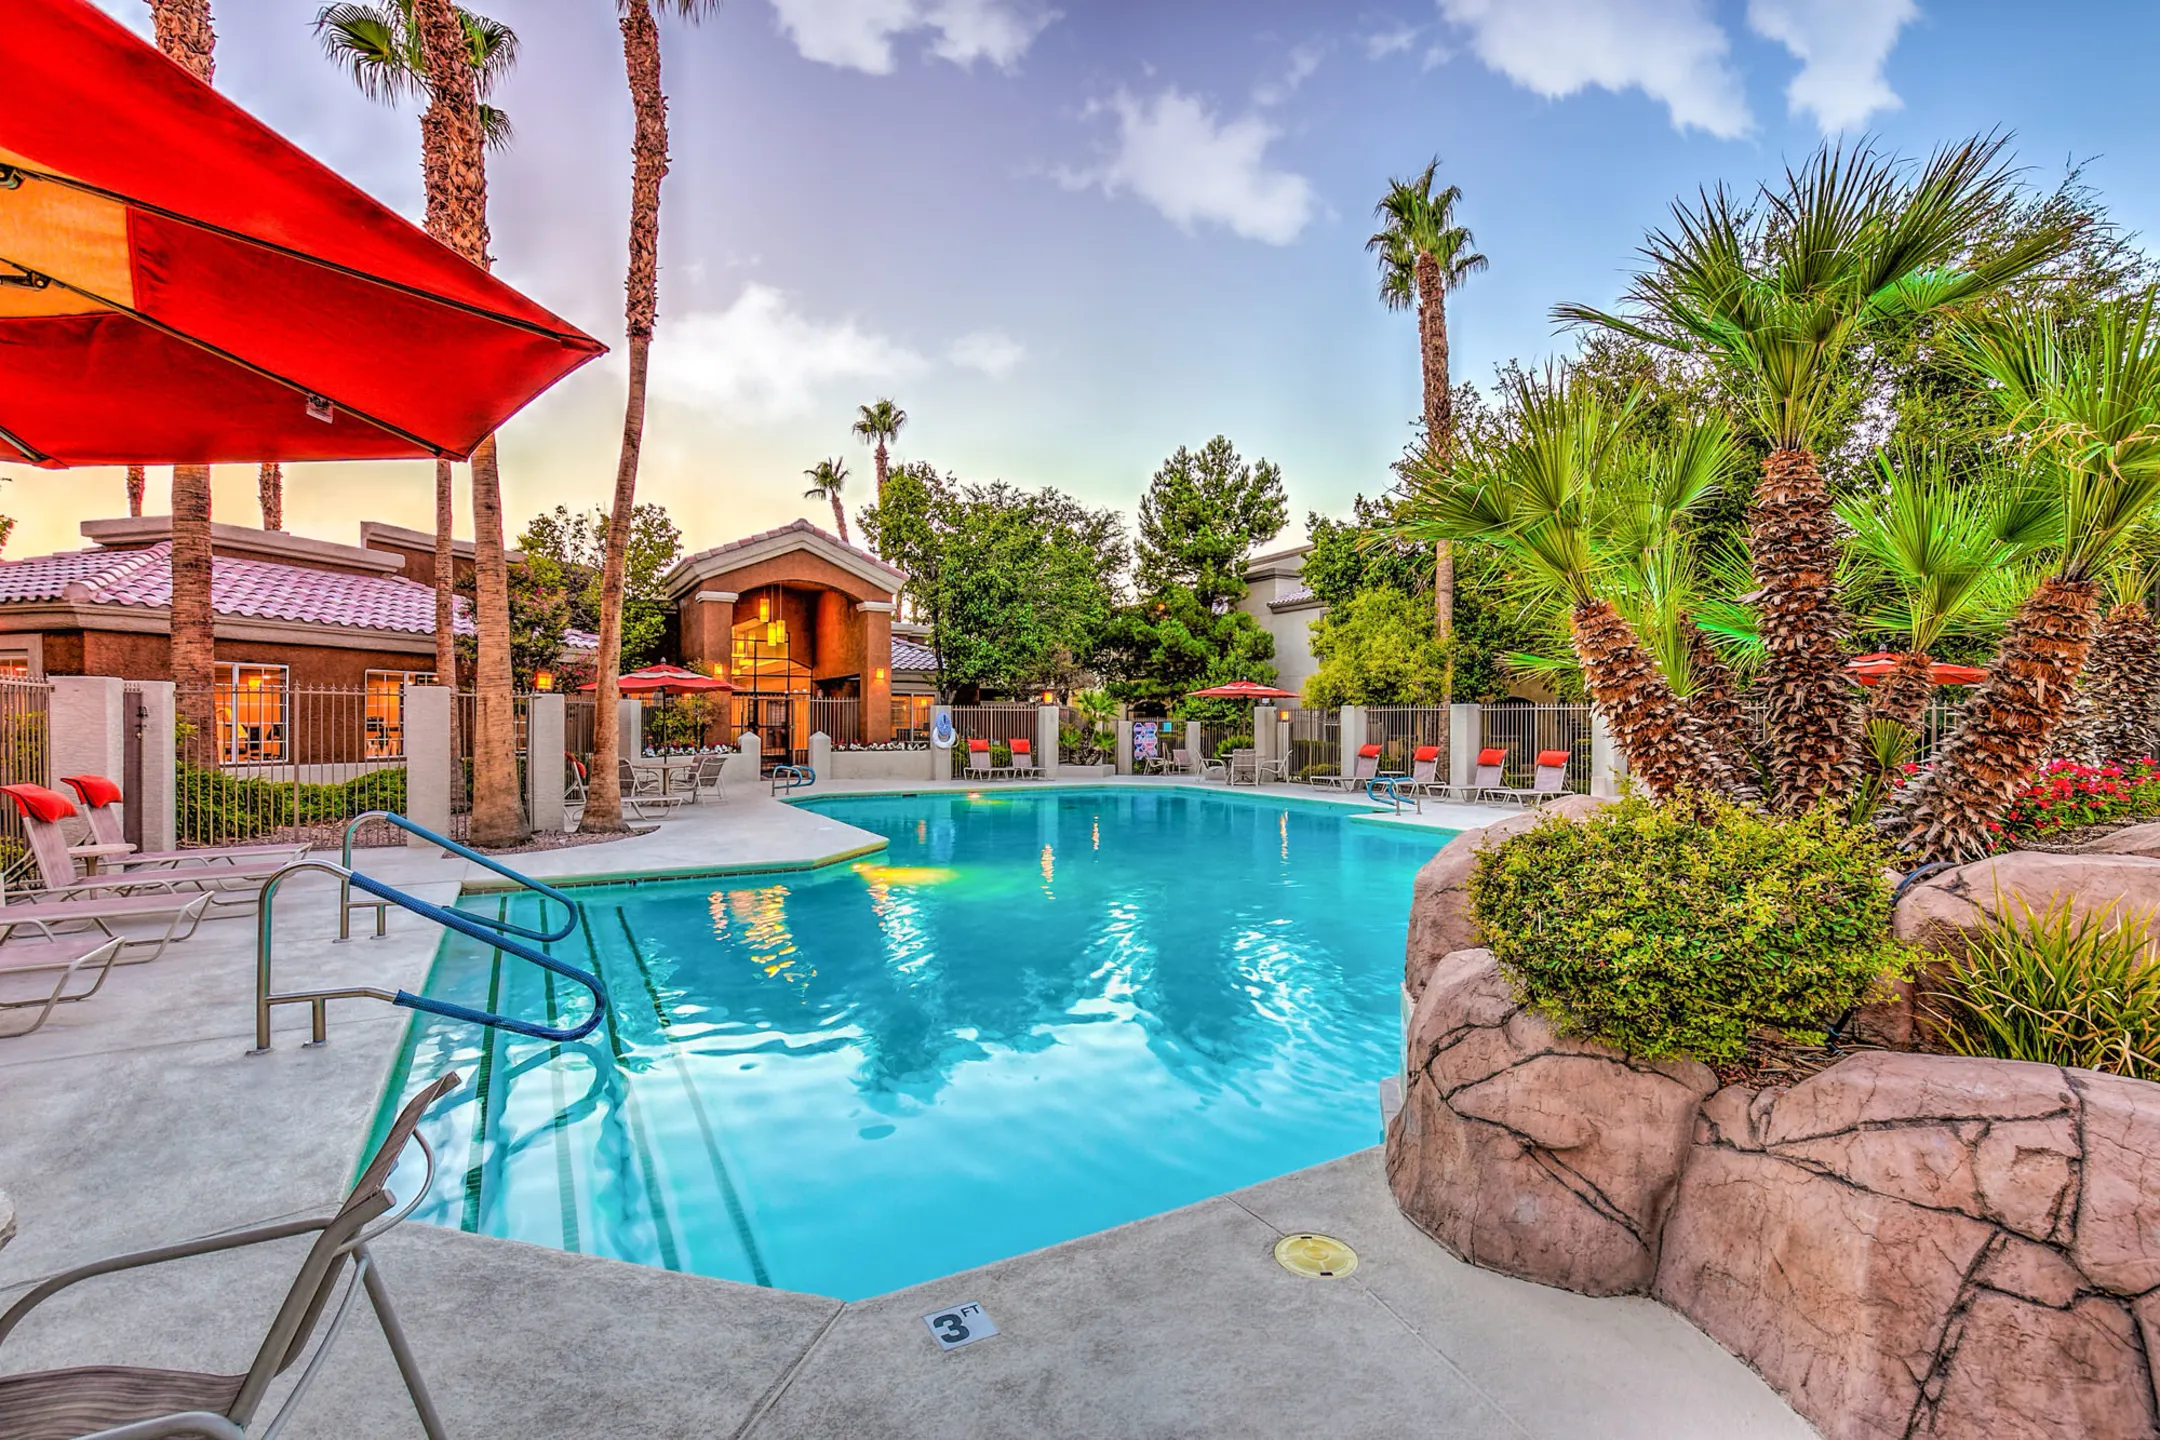 Pool - Estancia - Las Vegas, NV